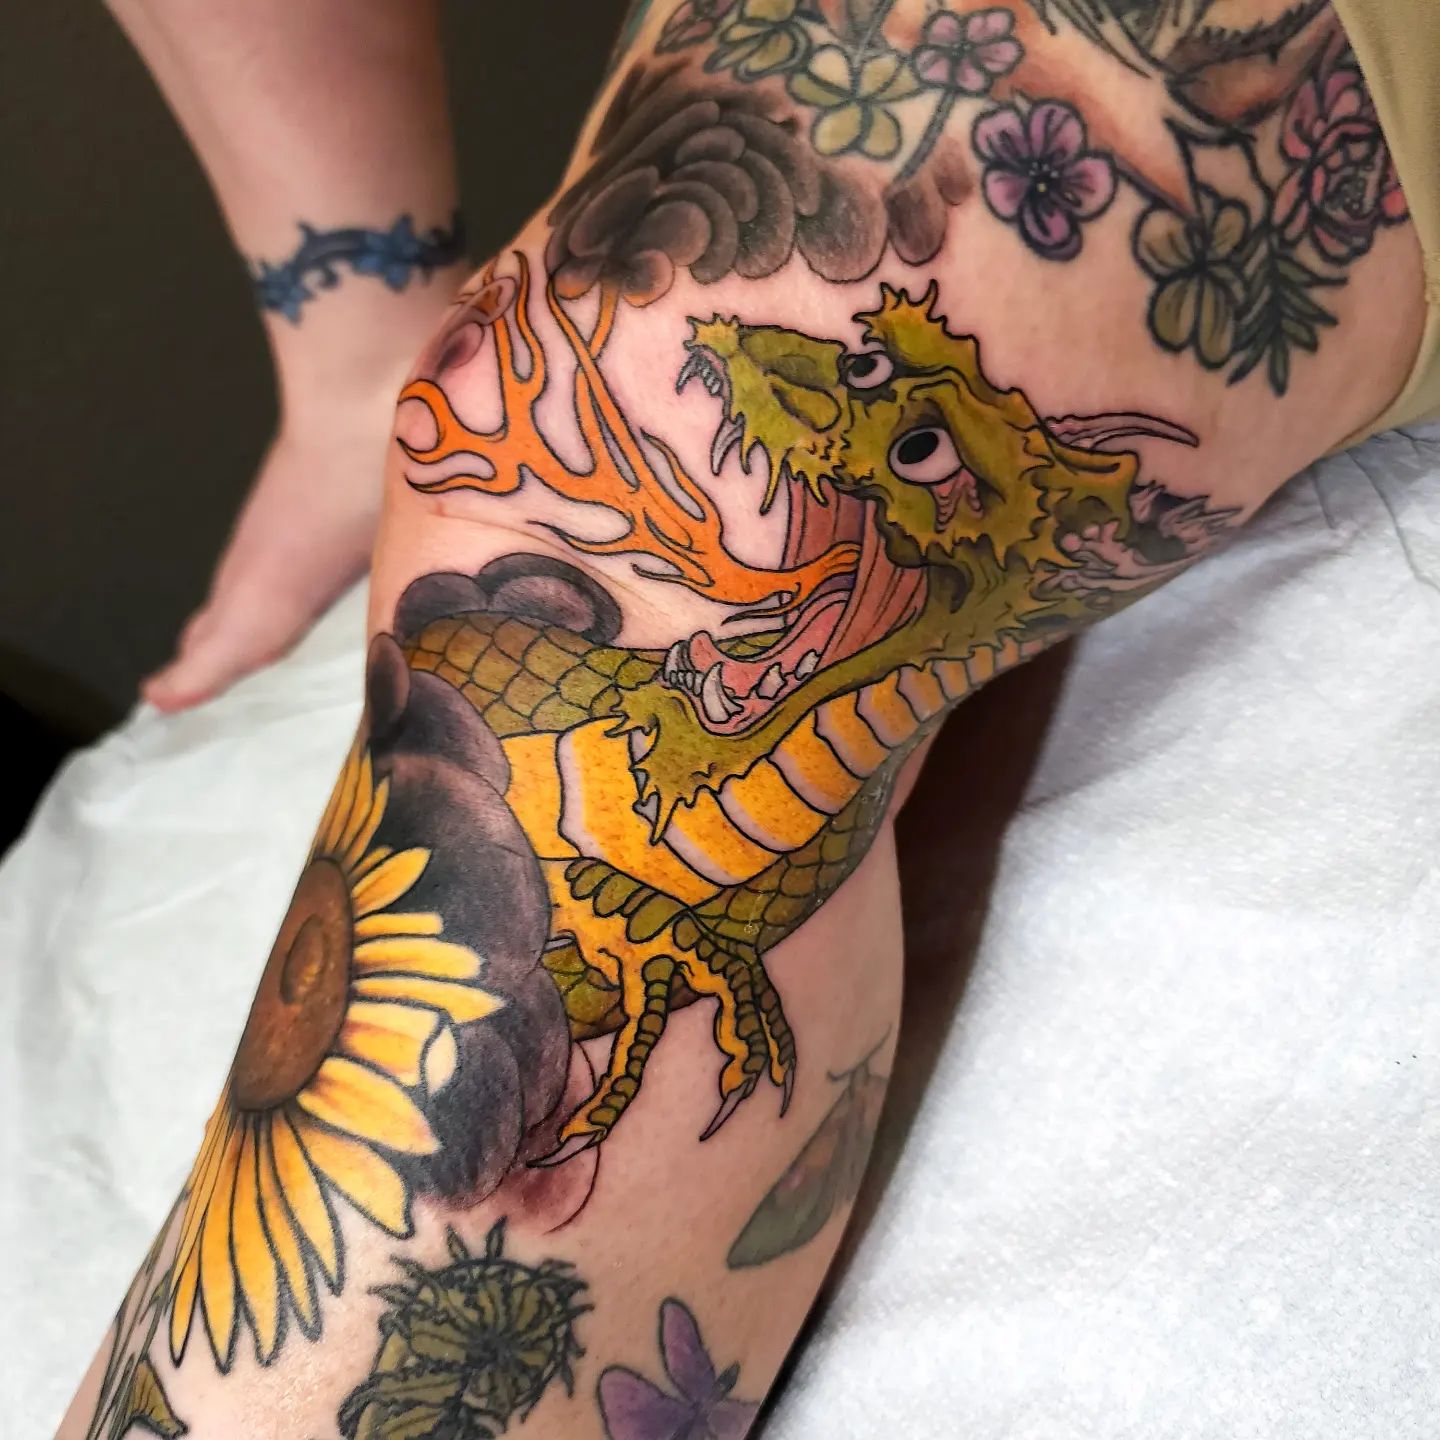 Diseño de tatuaje único y artístico en la rodilla